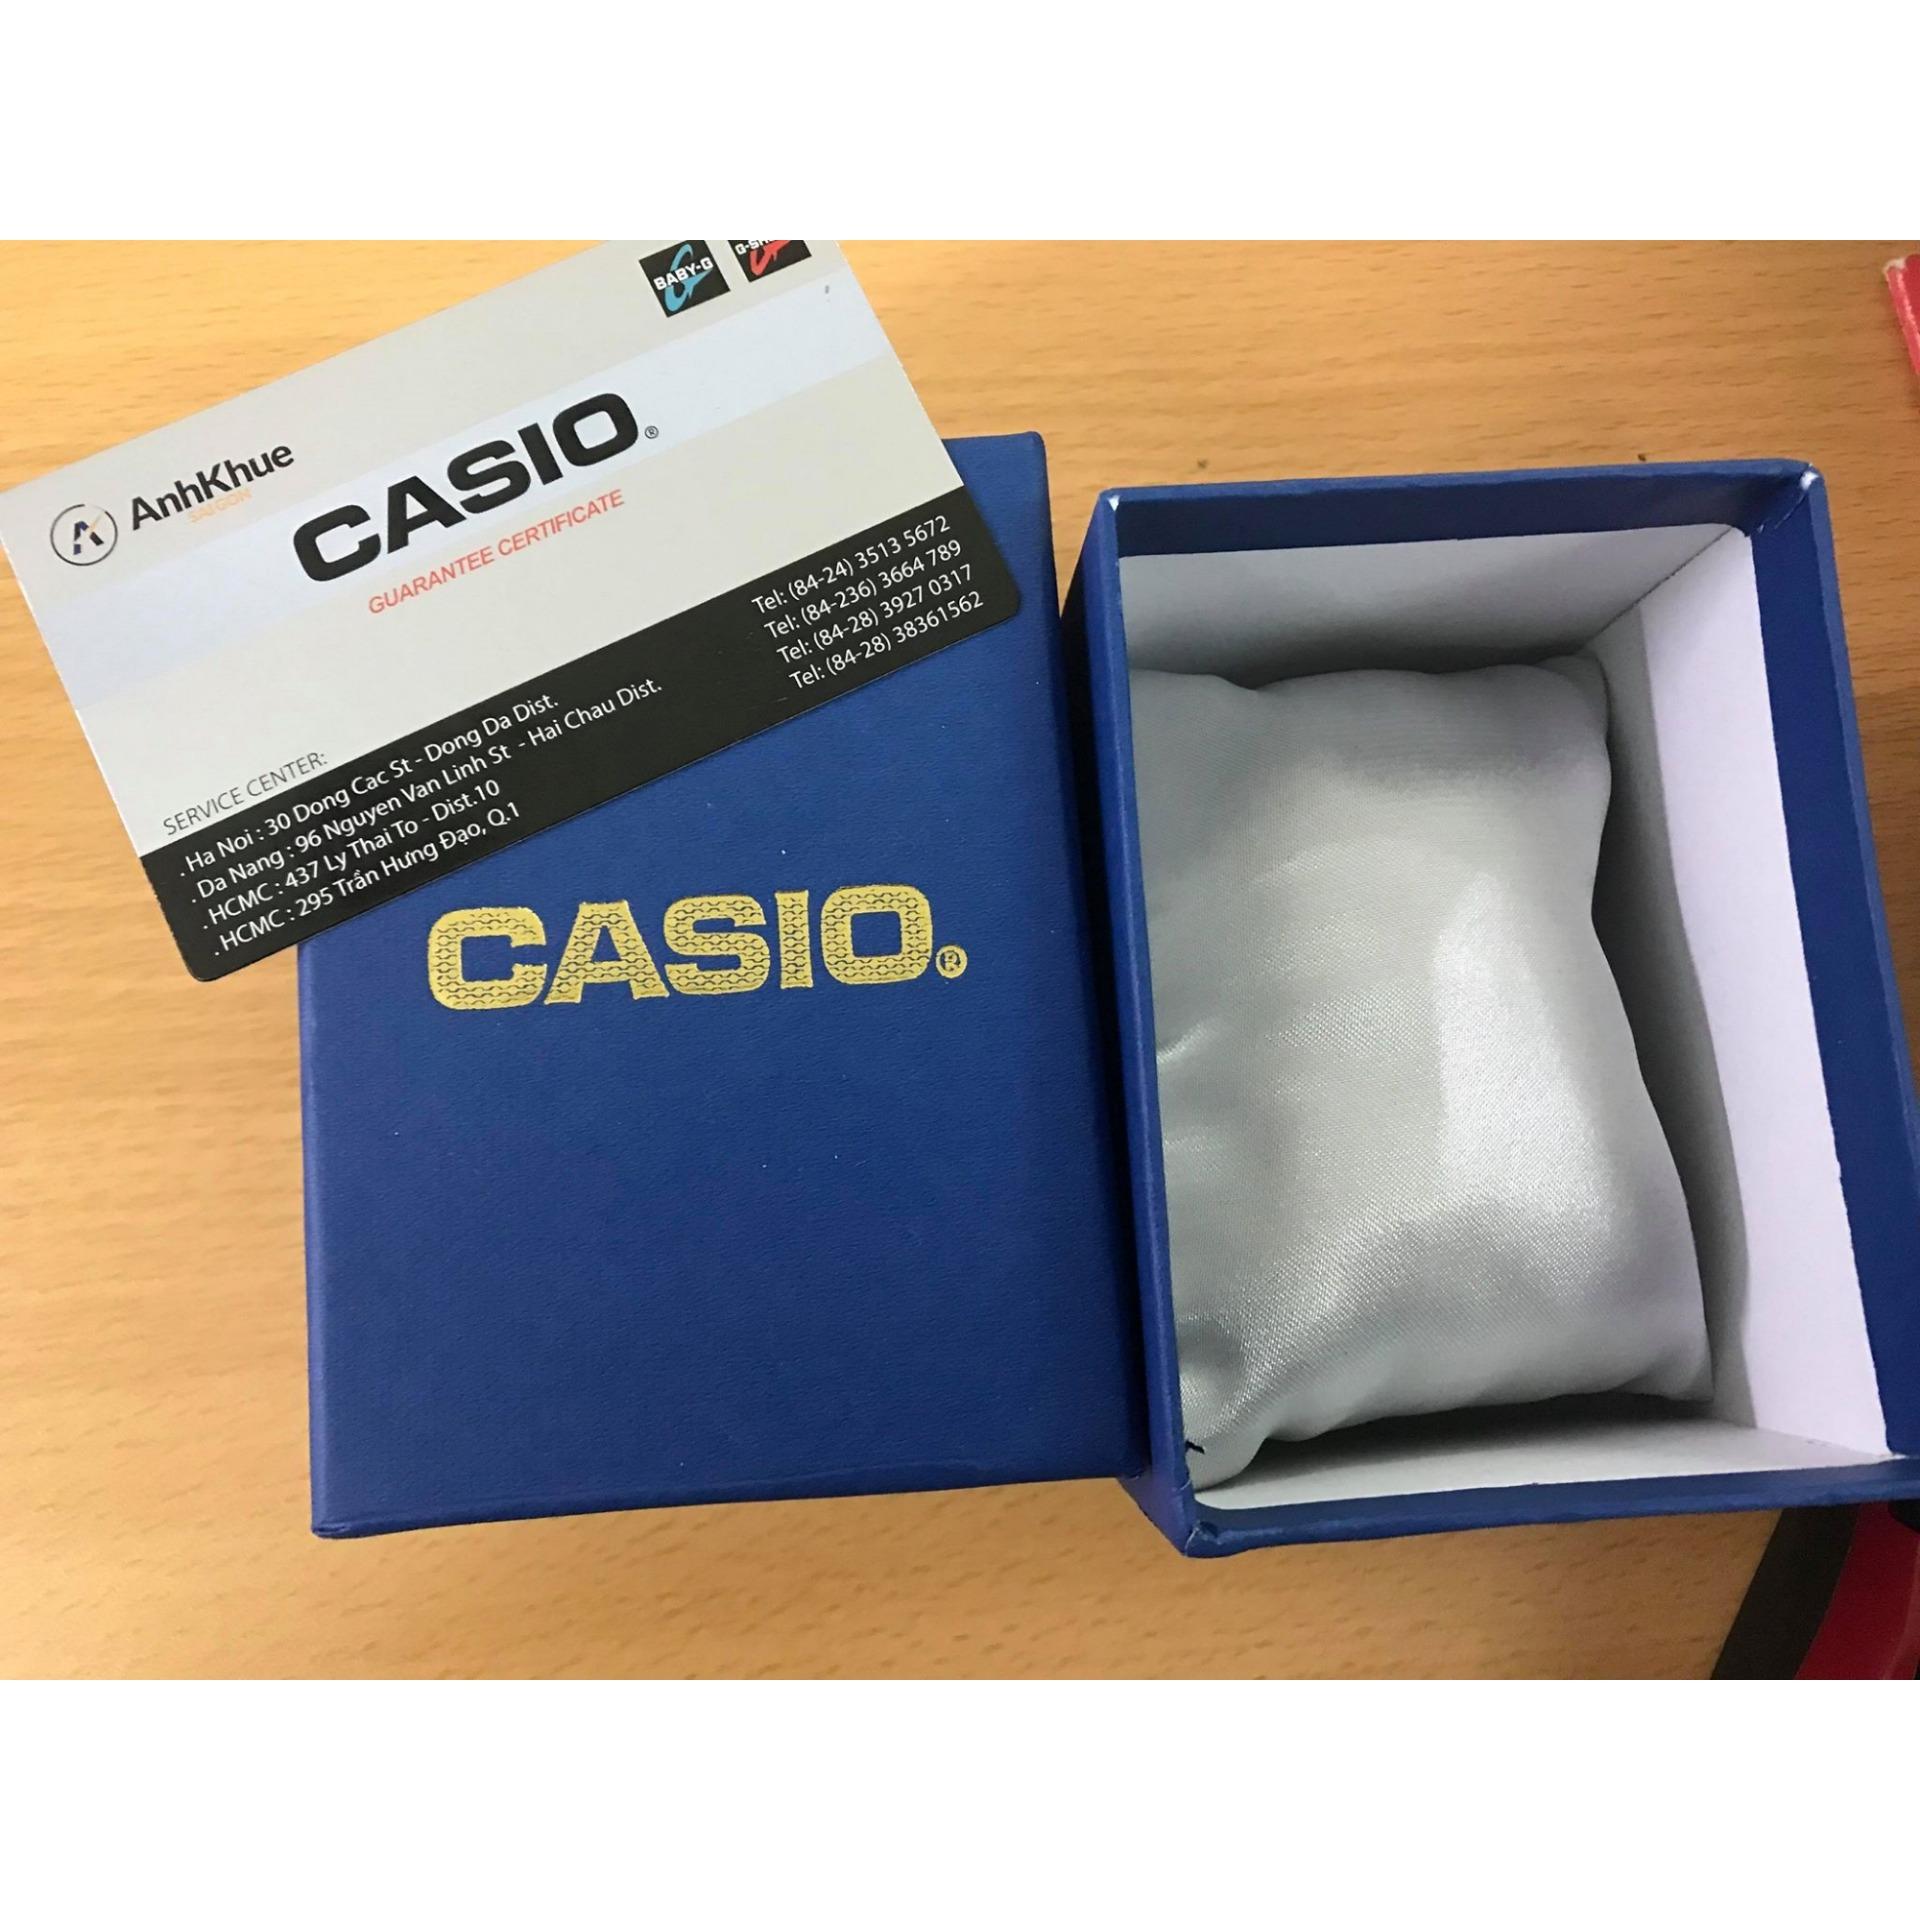 Đồng hồ nam dây nhựa Casio Anh Khuê AE-1300WH-8AVDF